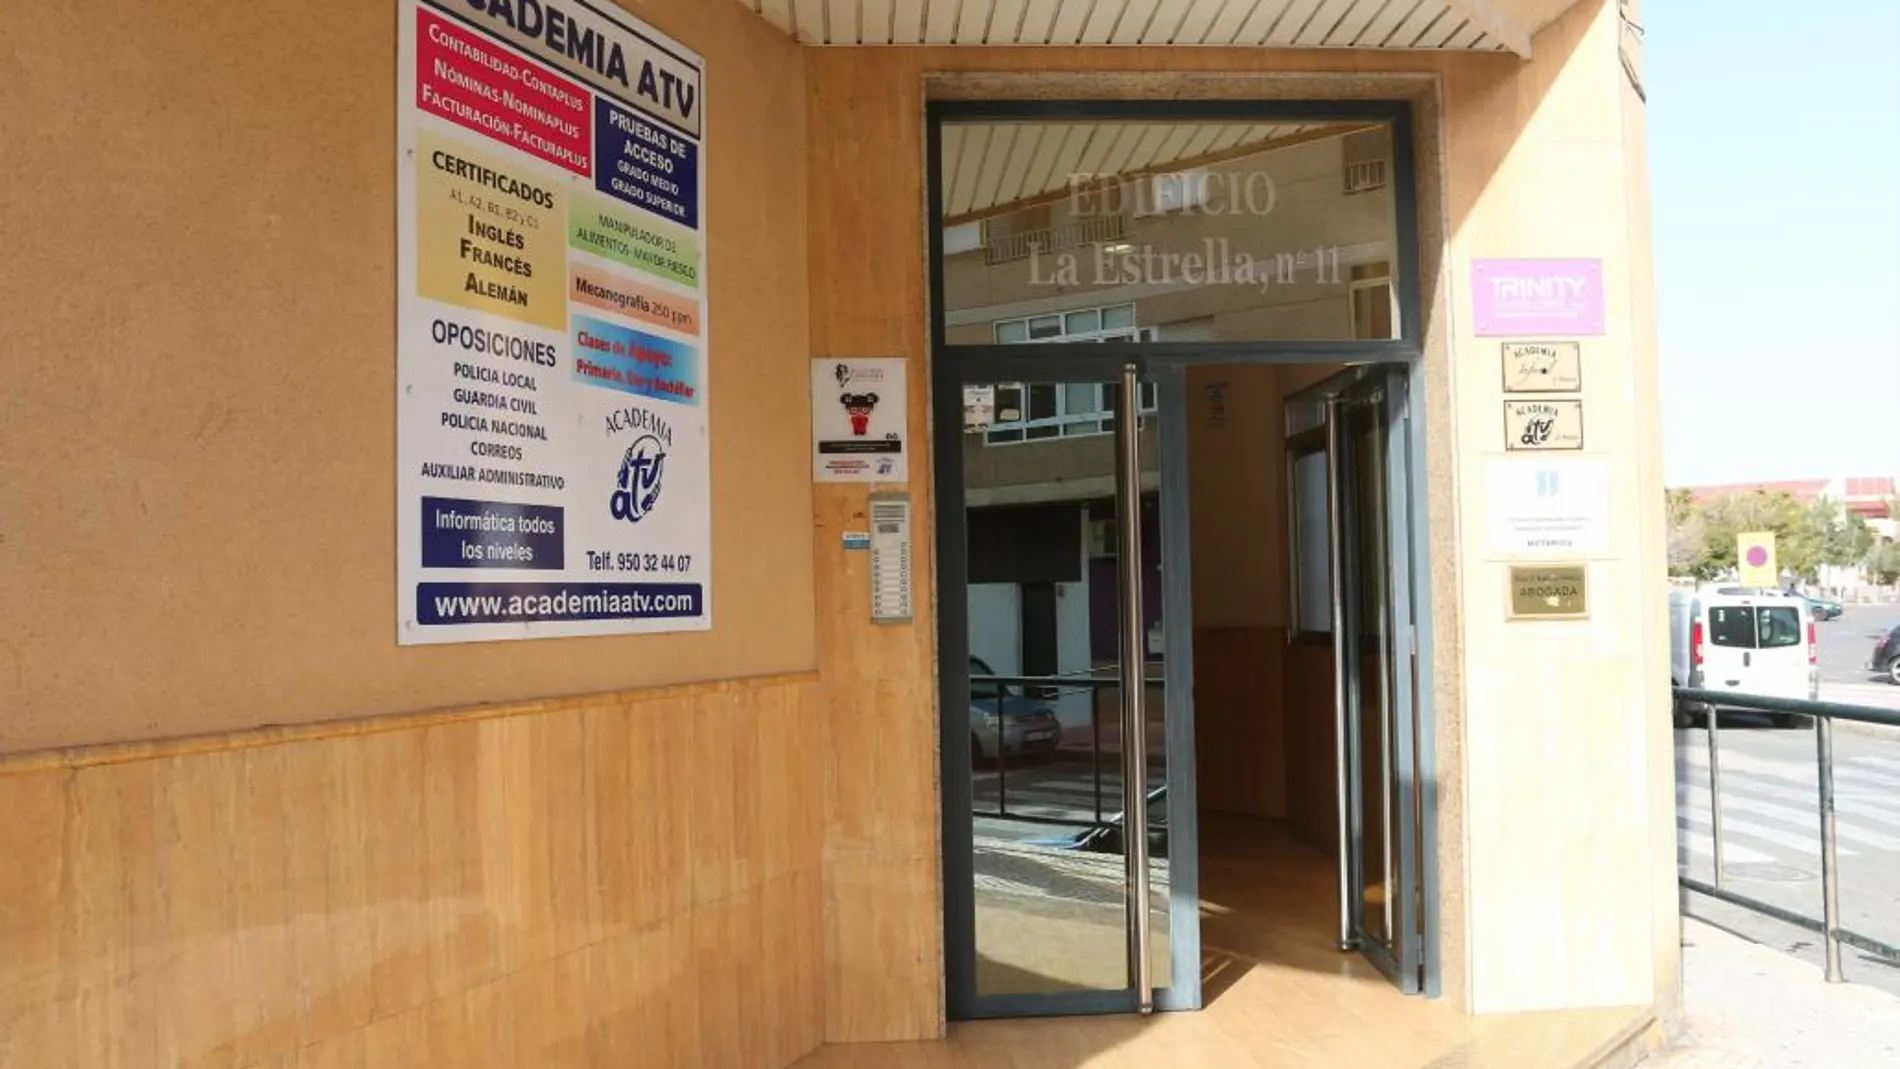 Puerta de la Academia ATV en Roquetas de Mar cuyo propietario es el concejal imputado del PSOE de la localidad Juan Fernando Ortega Paniagua, que esta siendo investigada en el marco de la operación "Edu Costa"